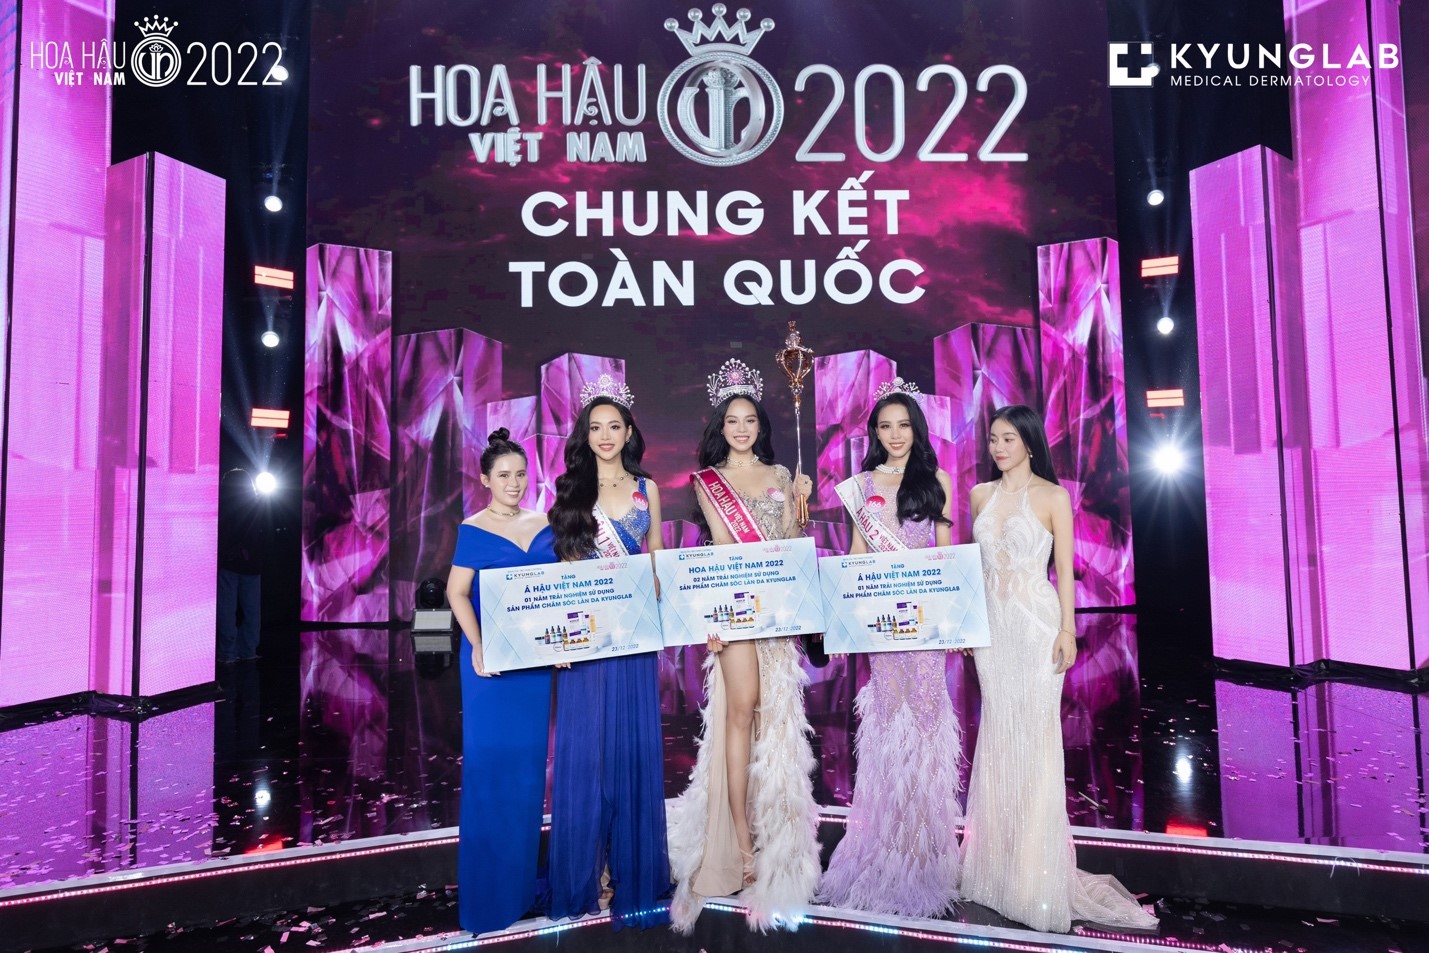 Thương hiệu KyungLab đồng hành cùng Top 3 HHVN 2022 trong thời gian đương nhiệm - Ảnh 2.